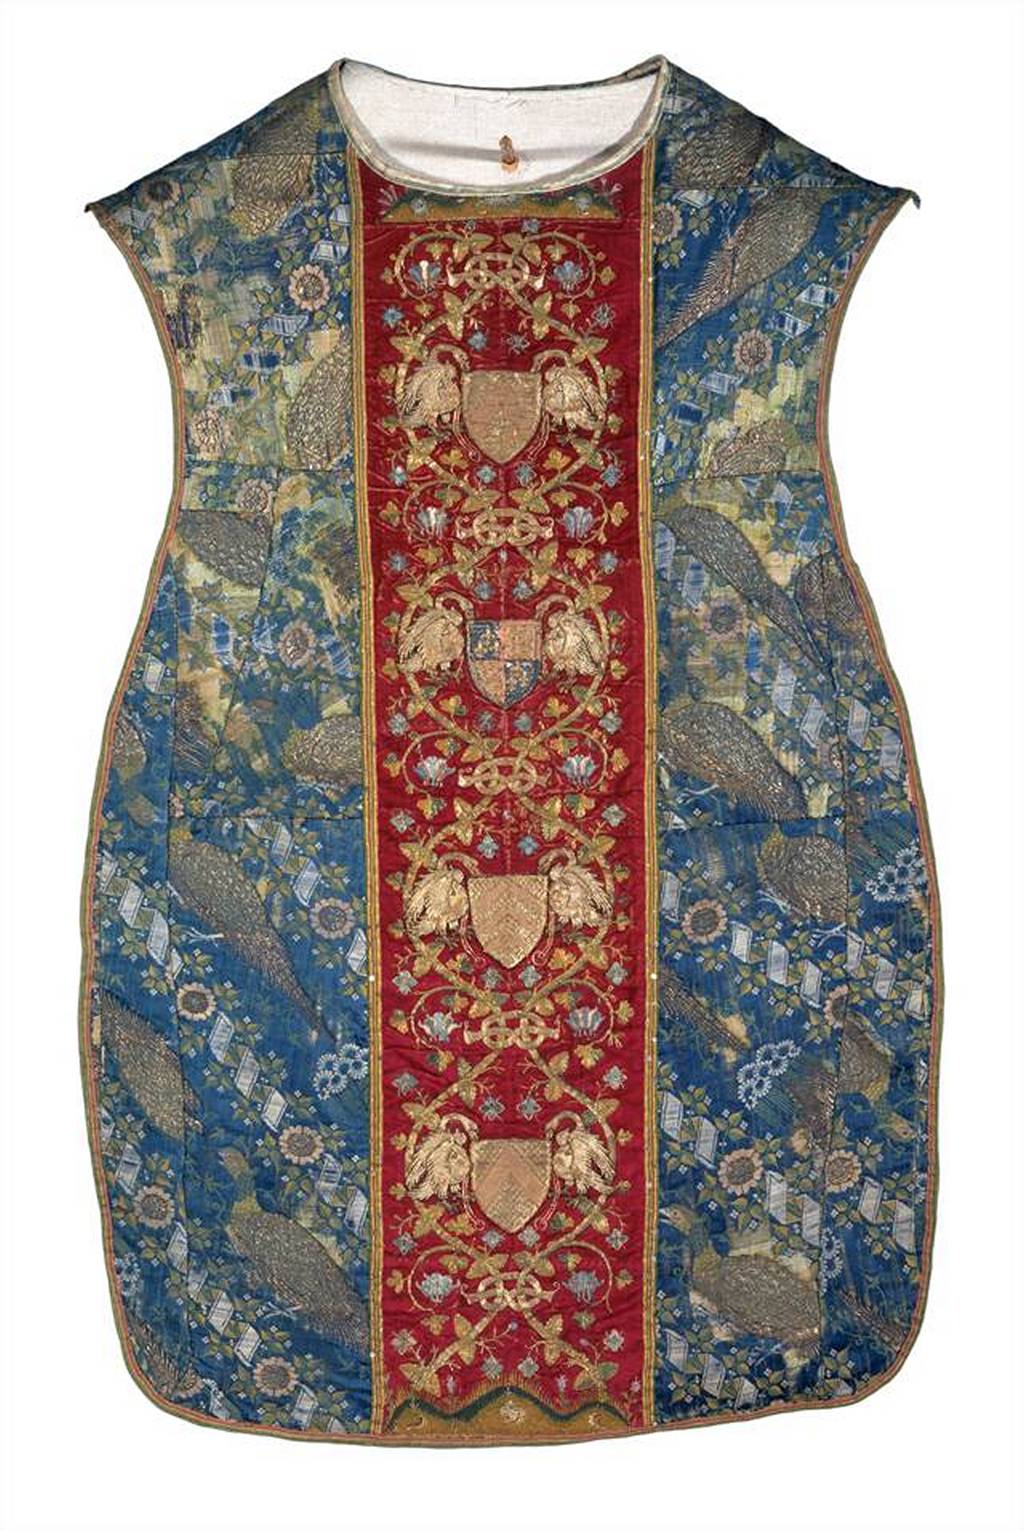 Риза Торнтона (The Thornton Chasuble), 1510-1533 / © Victoria and Albert Museum, London